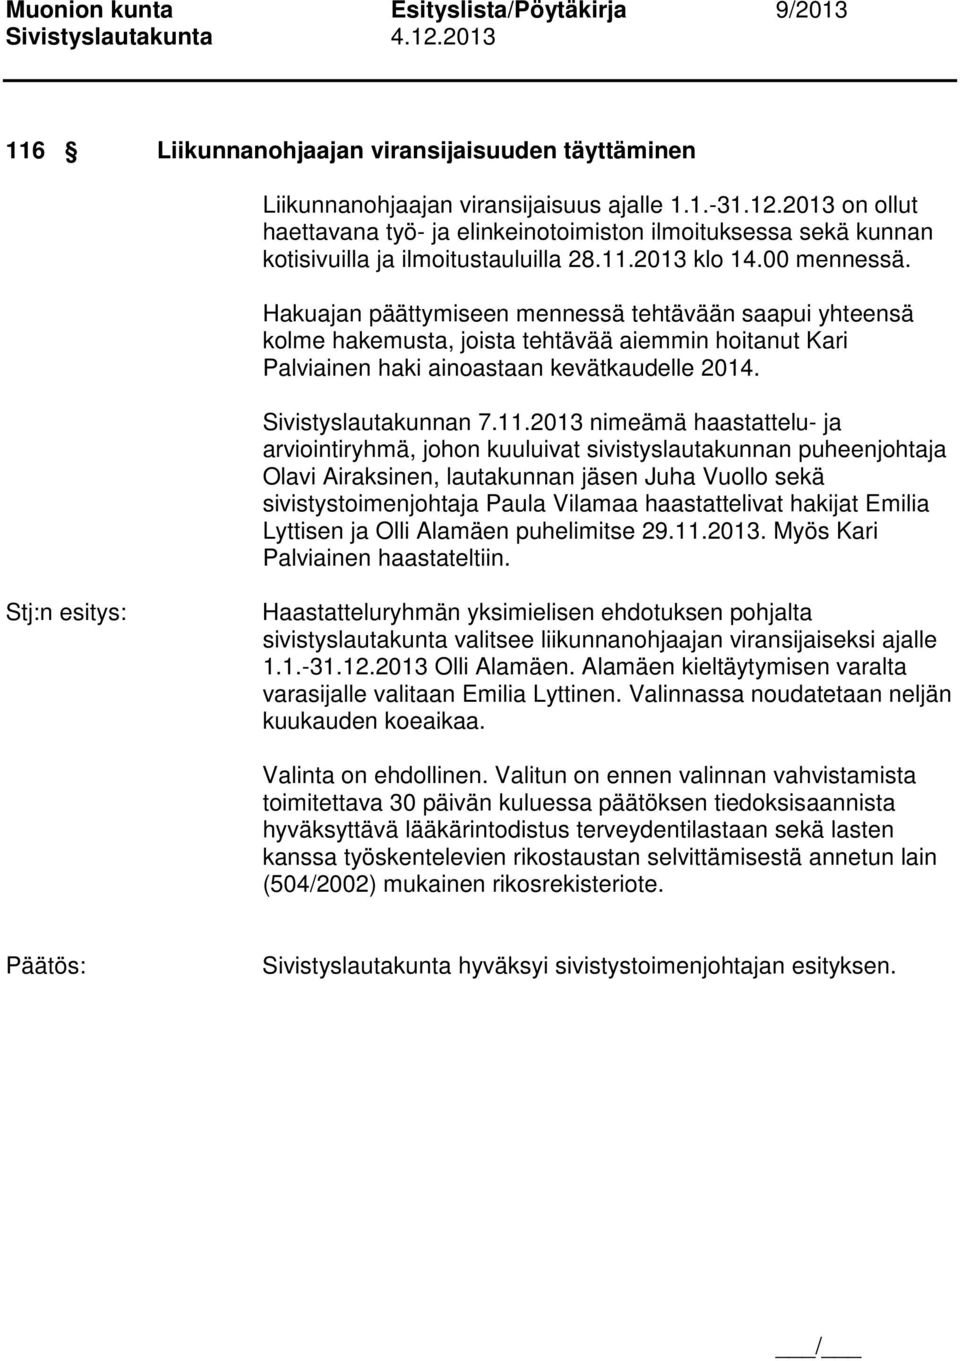 Hakuajan päättymiseen mennessä tehtävään saapui yhteensä kolme hakemusta, joista tehtävää aiemmin hoitanut Kari Palviainen haki ainoastaan kevätkaudelle 2014. Sivistyslautakunnan 7.11.